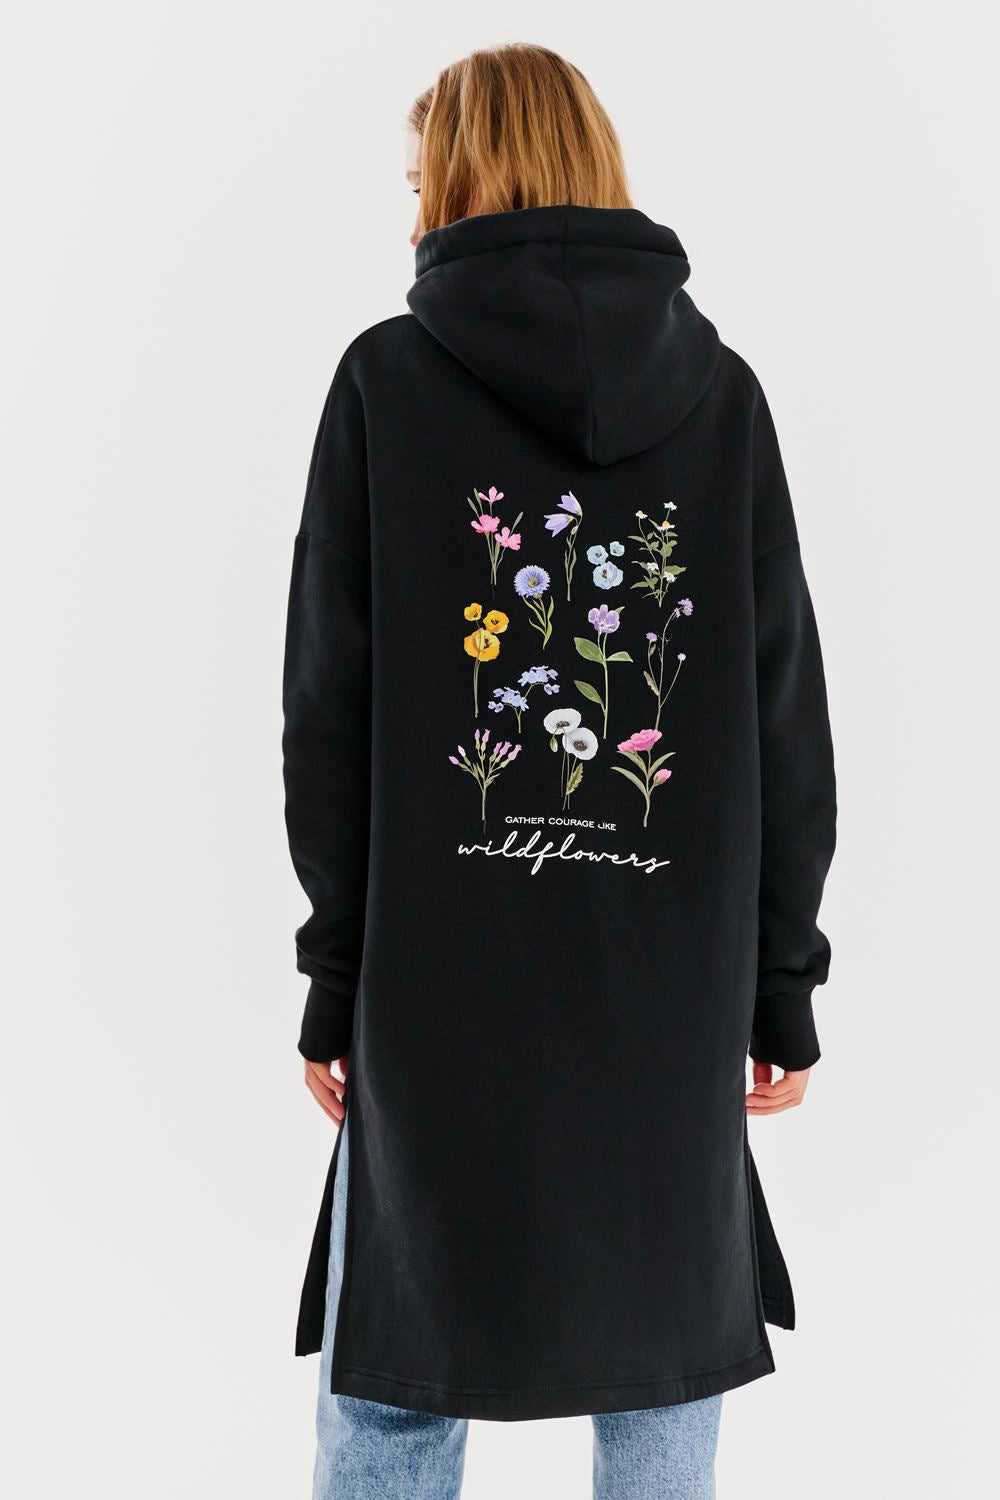 Wildflower longline sweatshirt